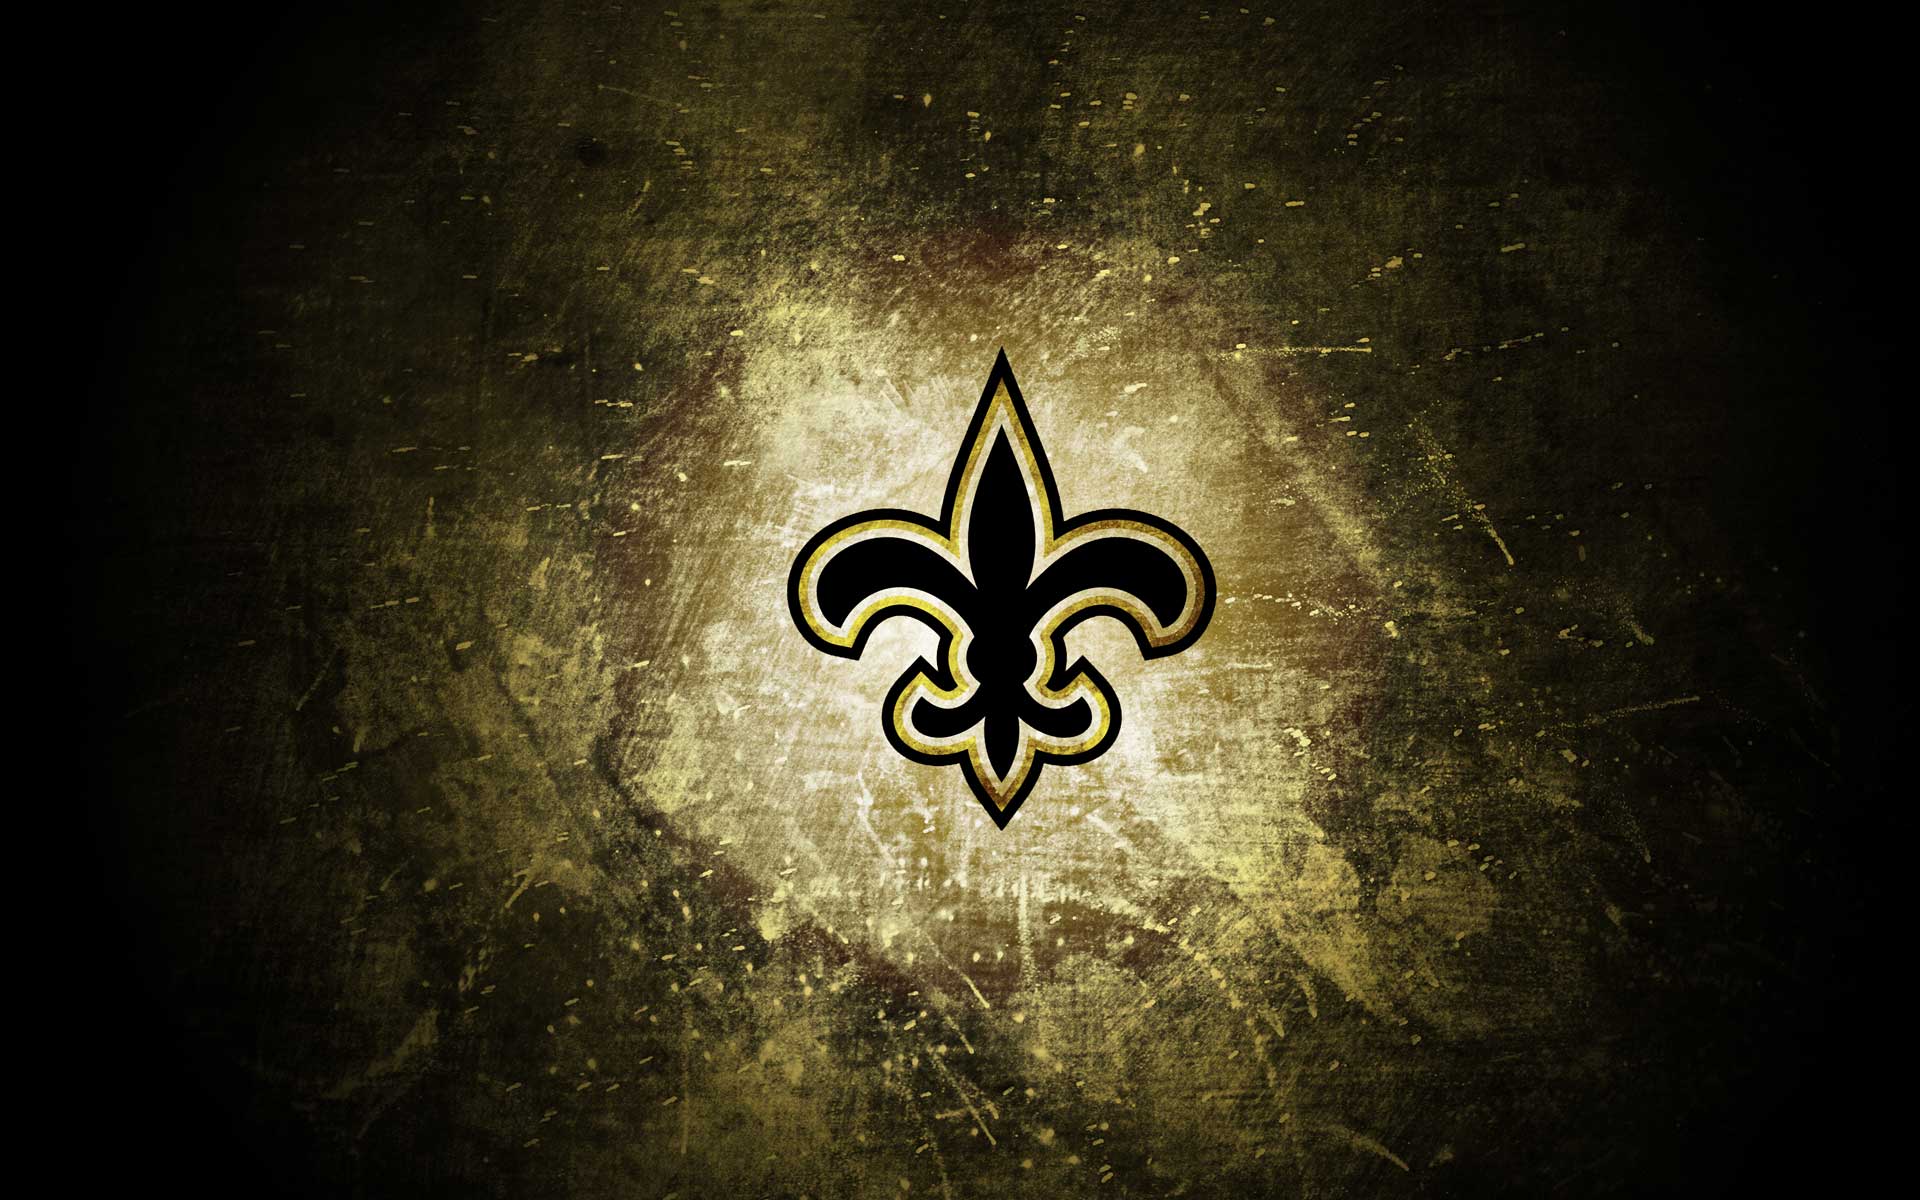 New Orleans Saints wallpaper. New Orleans Saints background